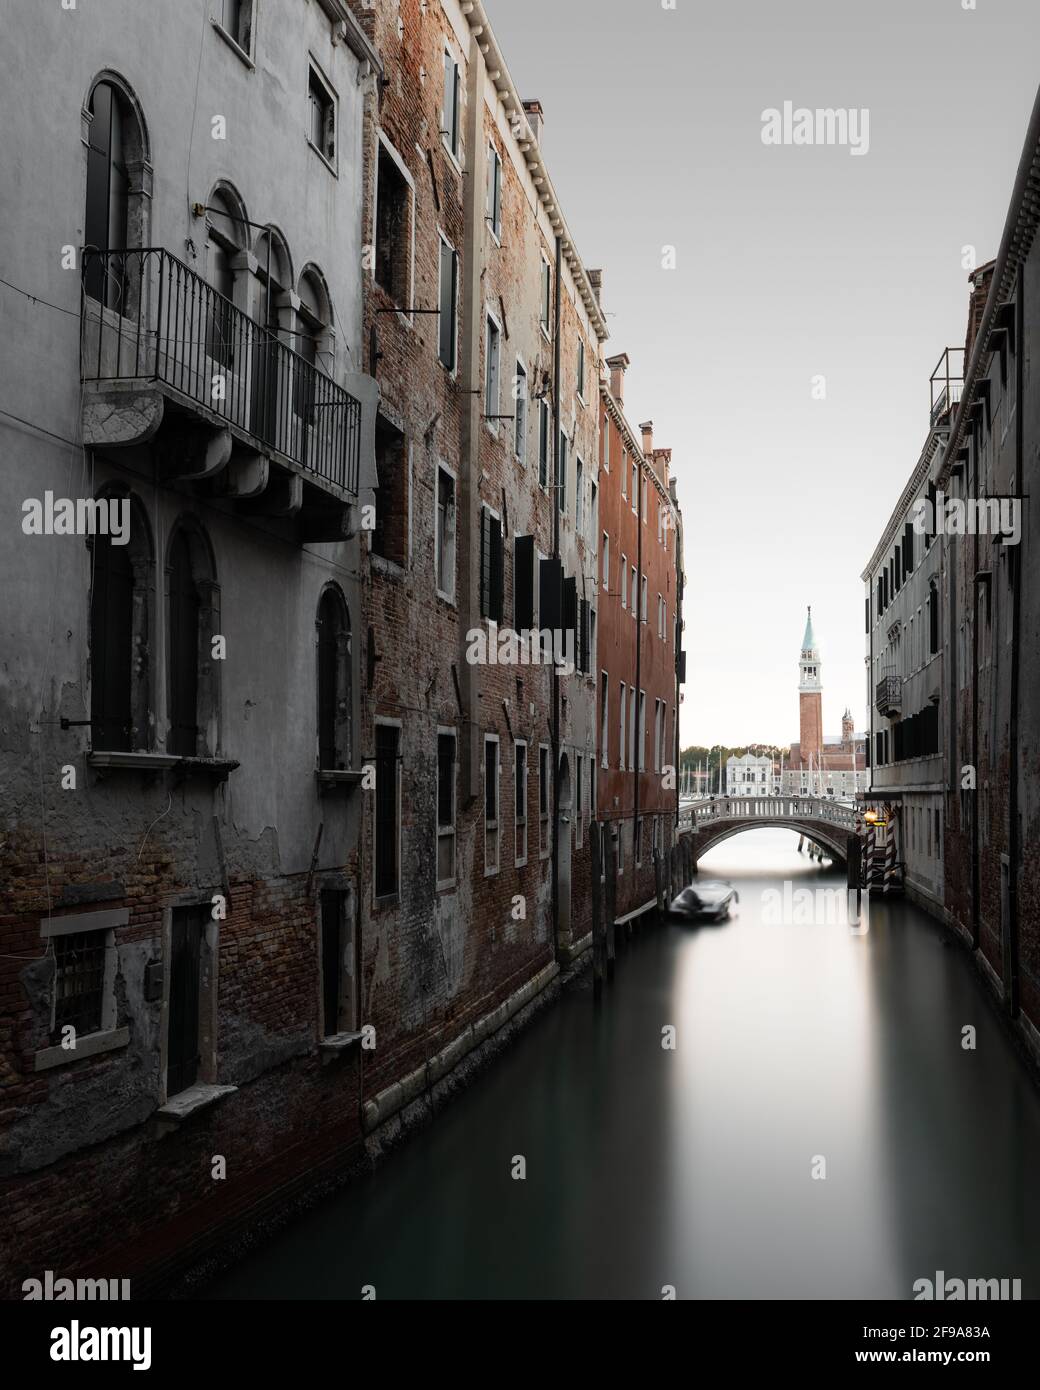 Canal typique entre les anciens bâtiments de Venise. En arrière-plan, vous pouvez voir le campanile de la petite île de San Giorgio Maggiore. Banque D'Images